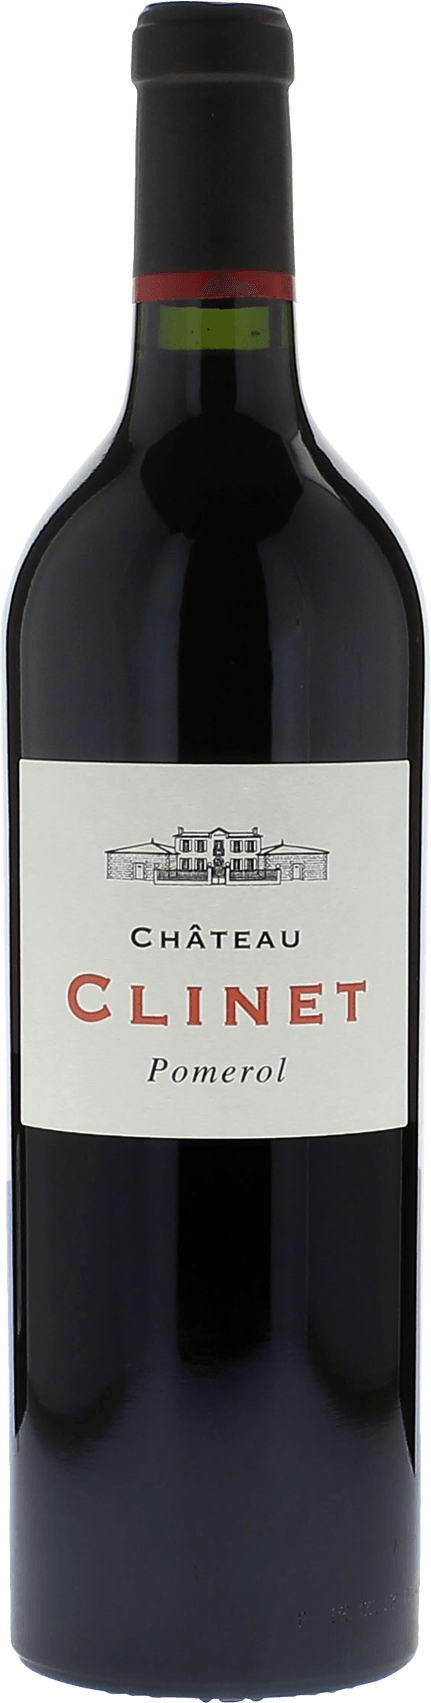 Clinet 2006  Pomerol, Bordeaux rouge